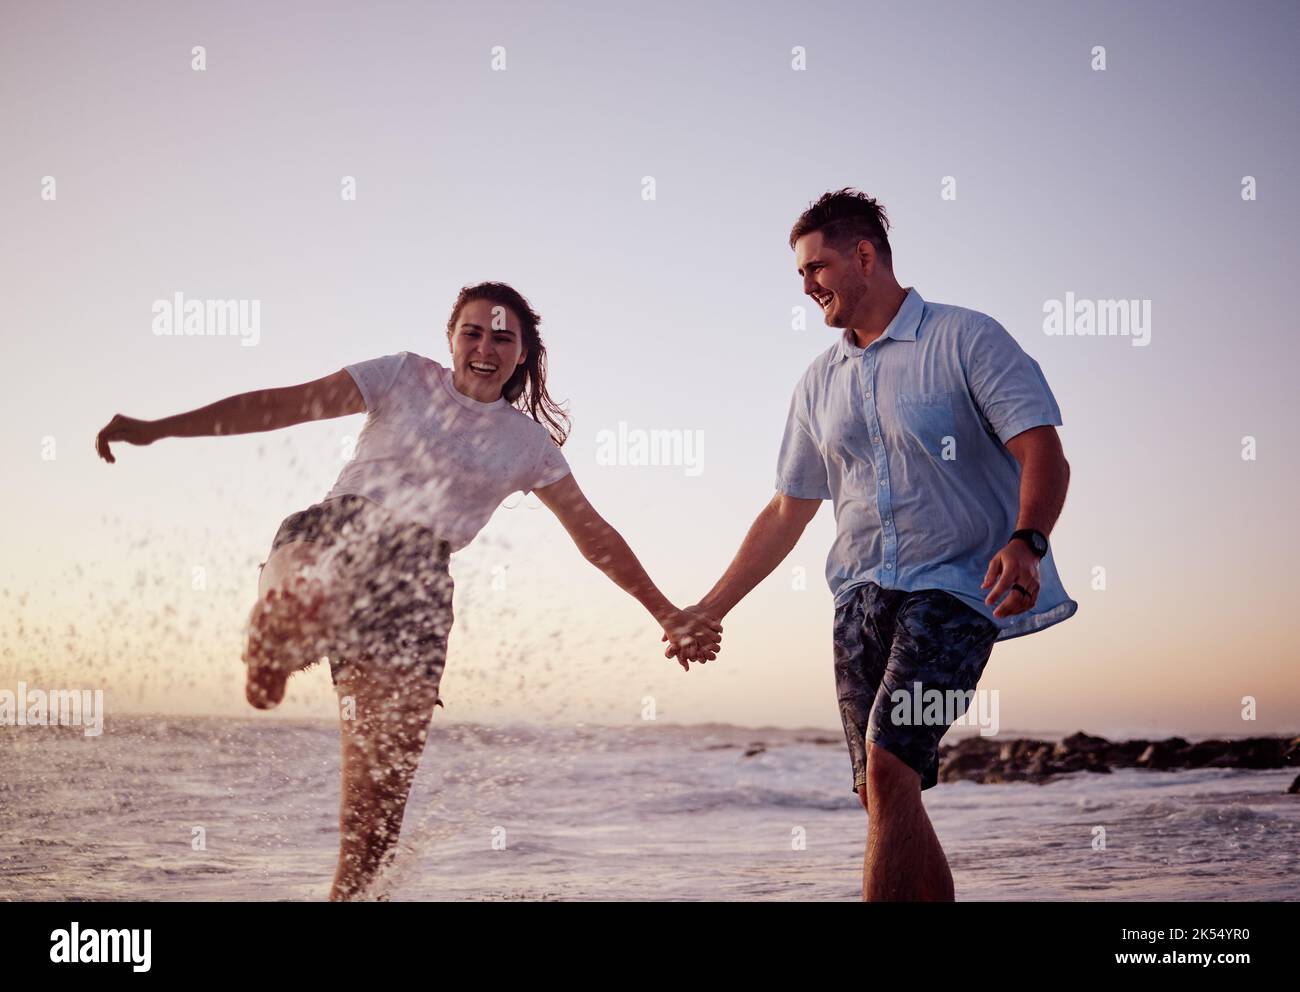 Strandwasser planschen, Paare und glückliche Menschen zusammen fühlen Liebe und Spaß im Sommer bei Sonnenuntergang. Freundin und Freund halten die Hände im Meer Stockfoto